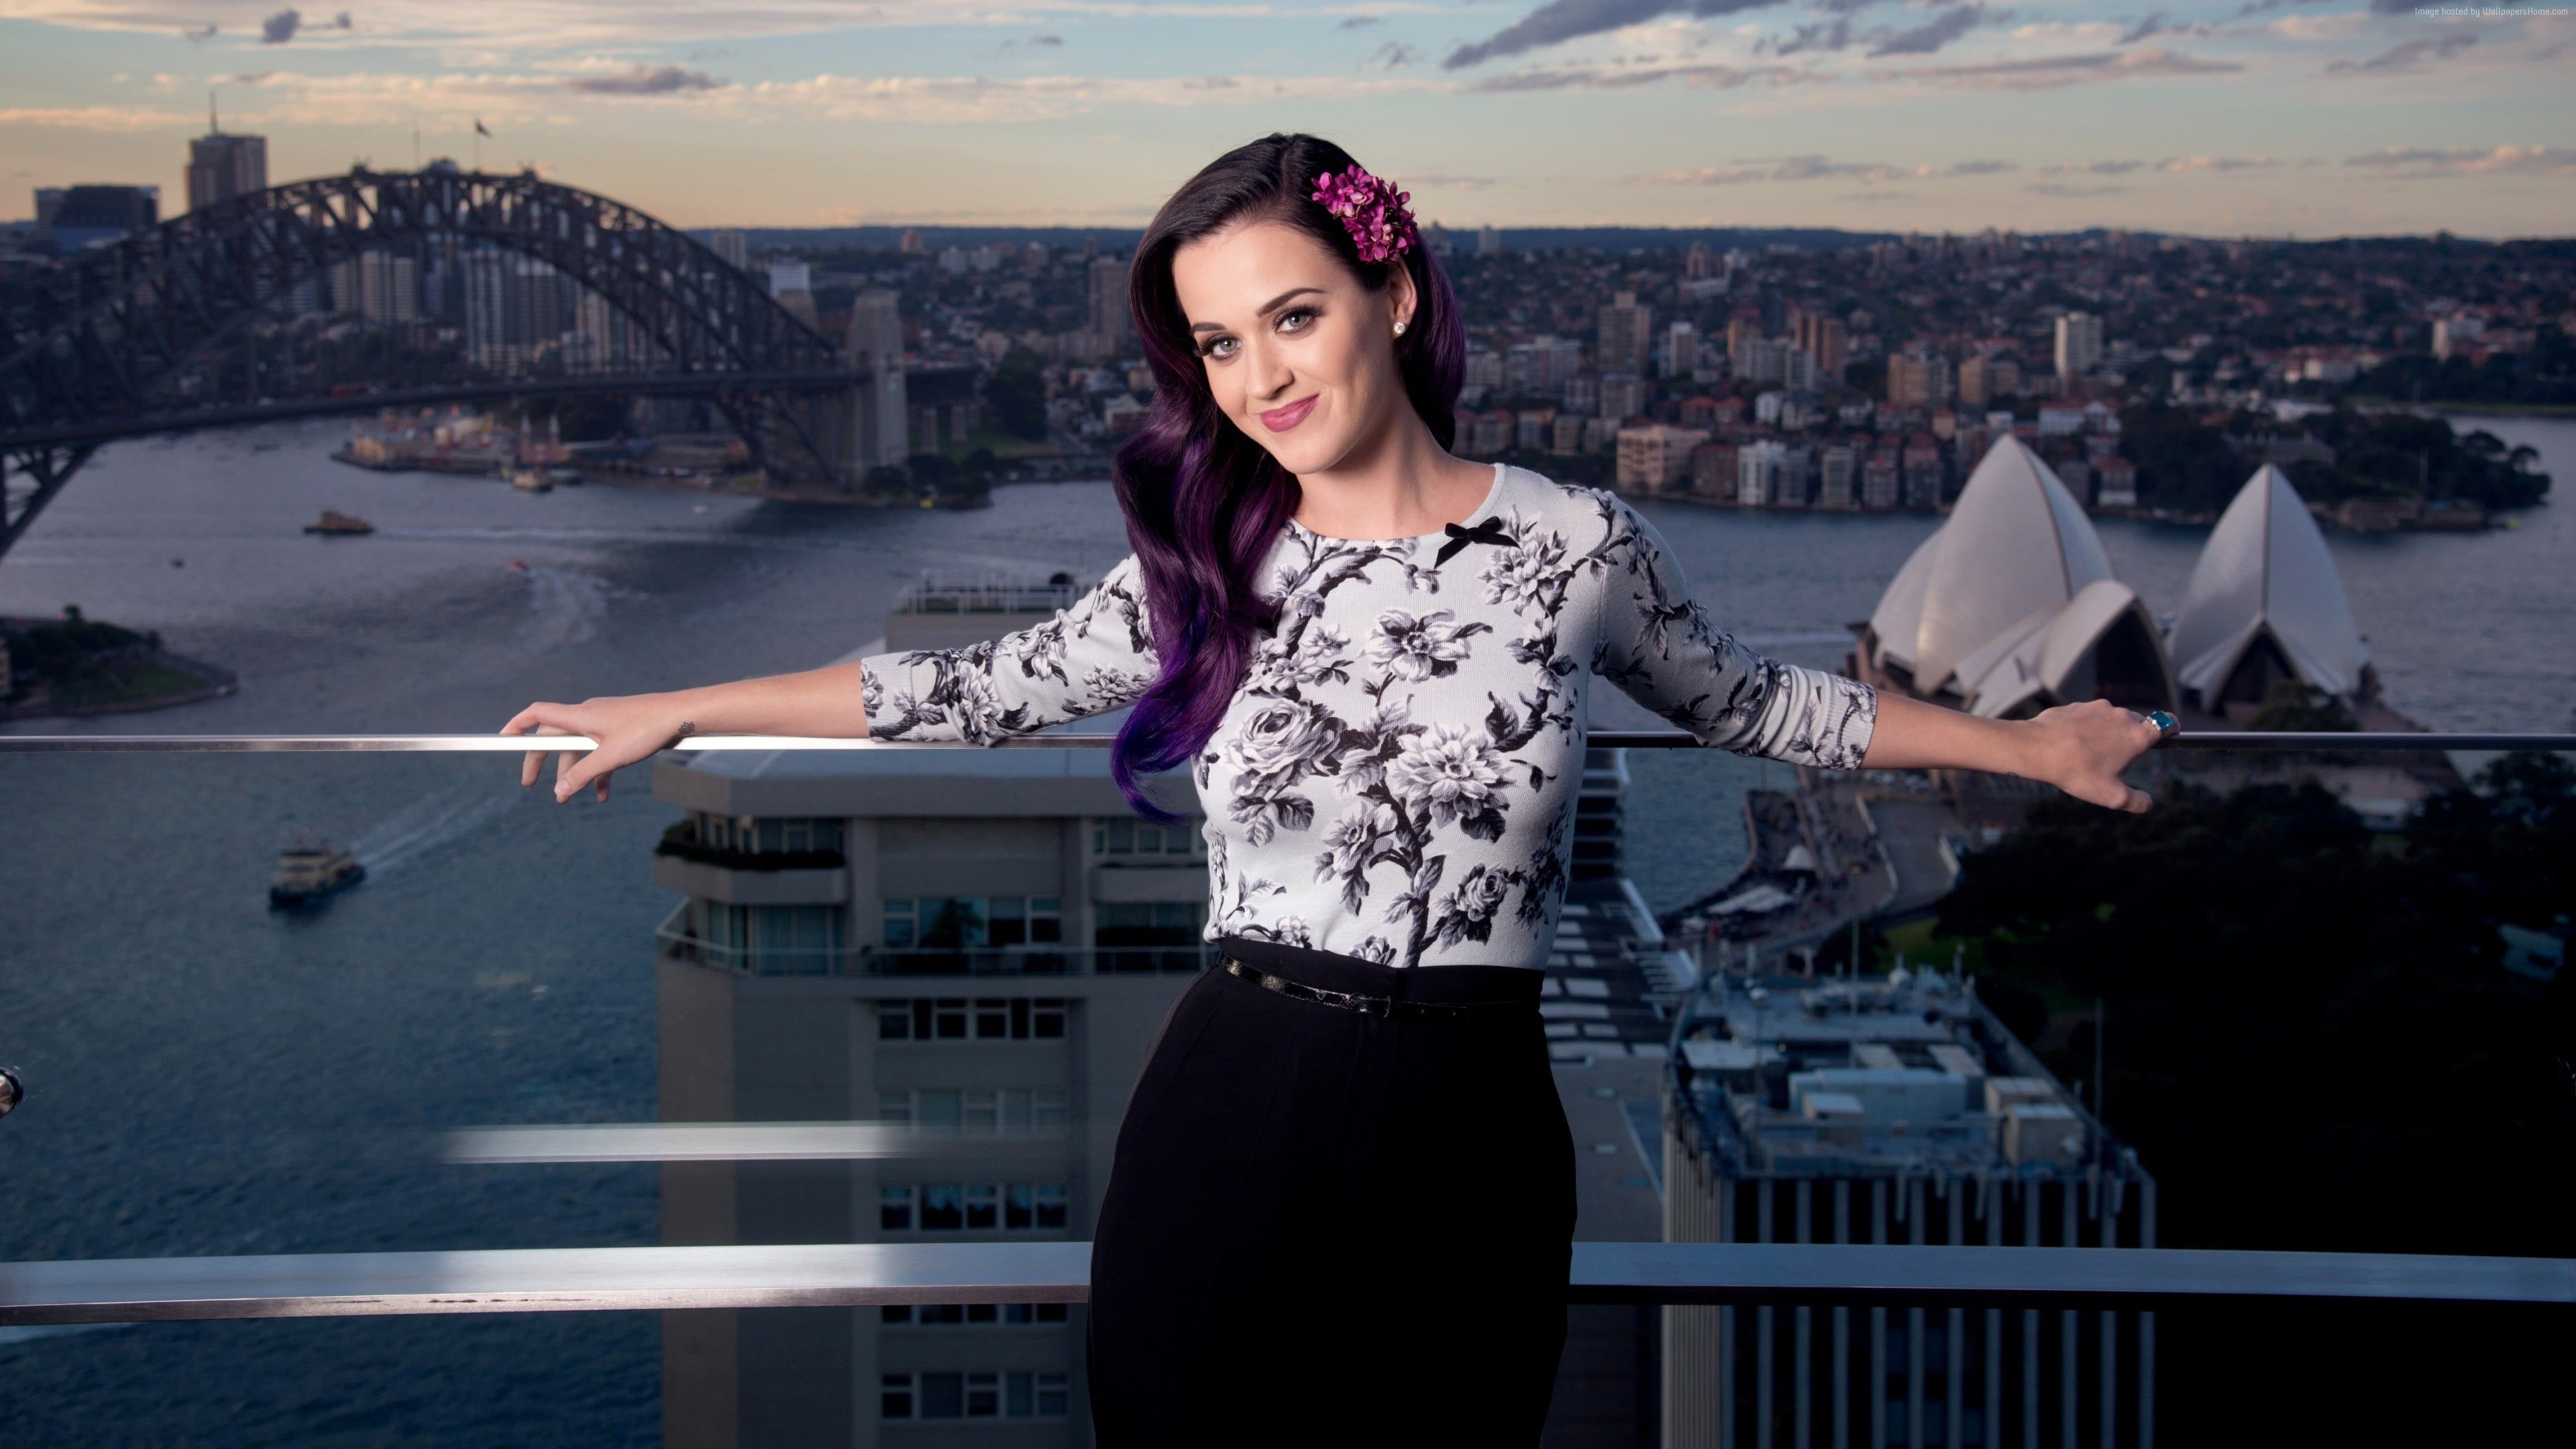 Katy Perry Sydney UHD 4K Wallpaper | Pixelz